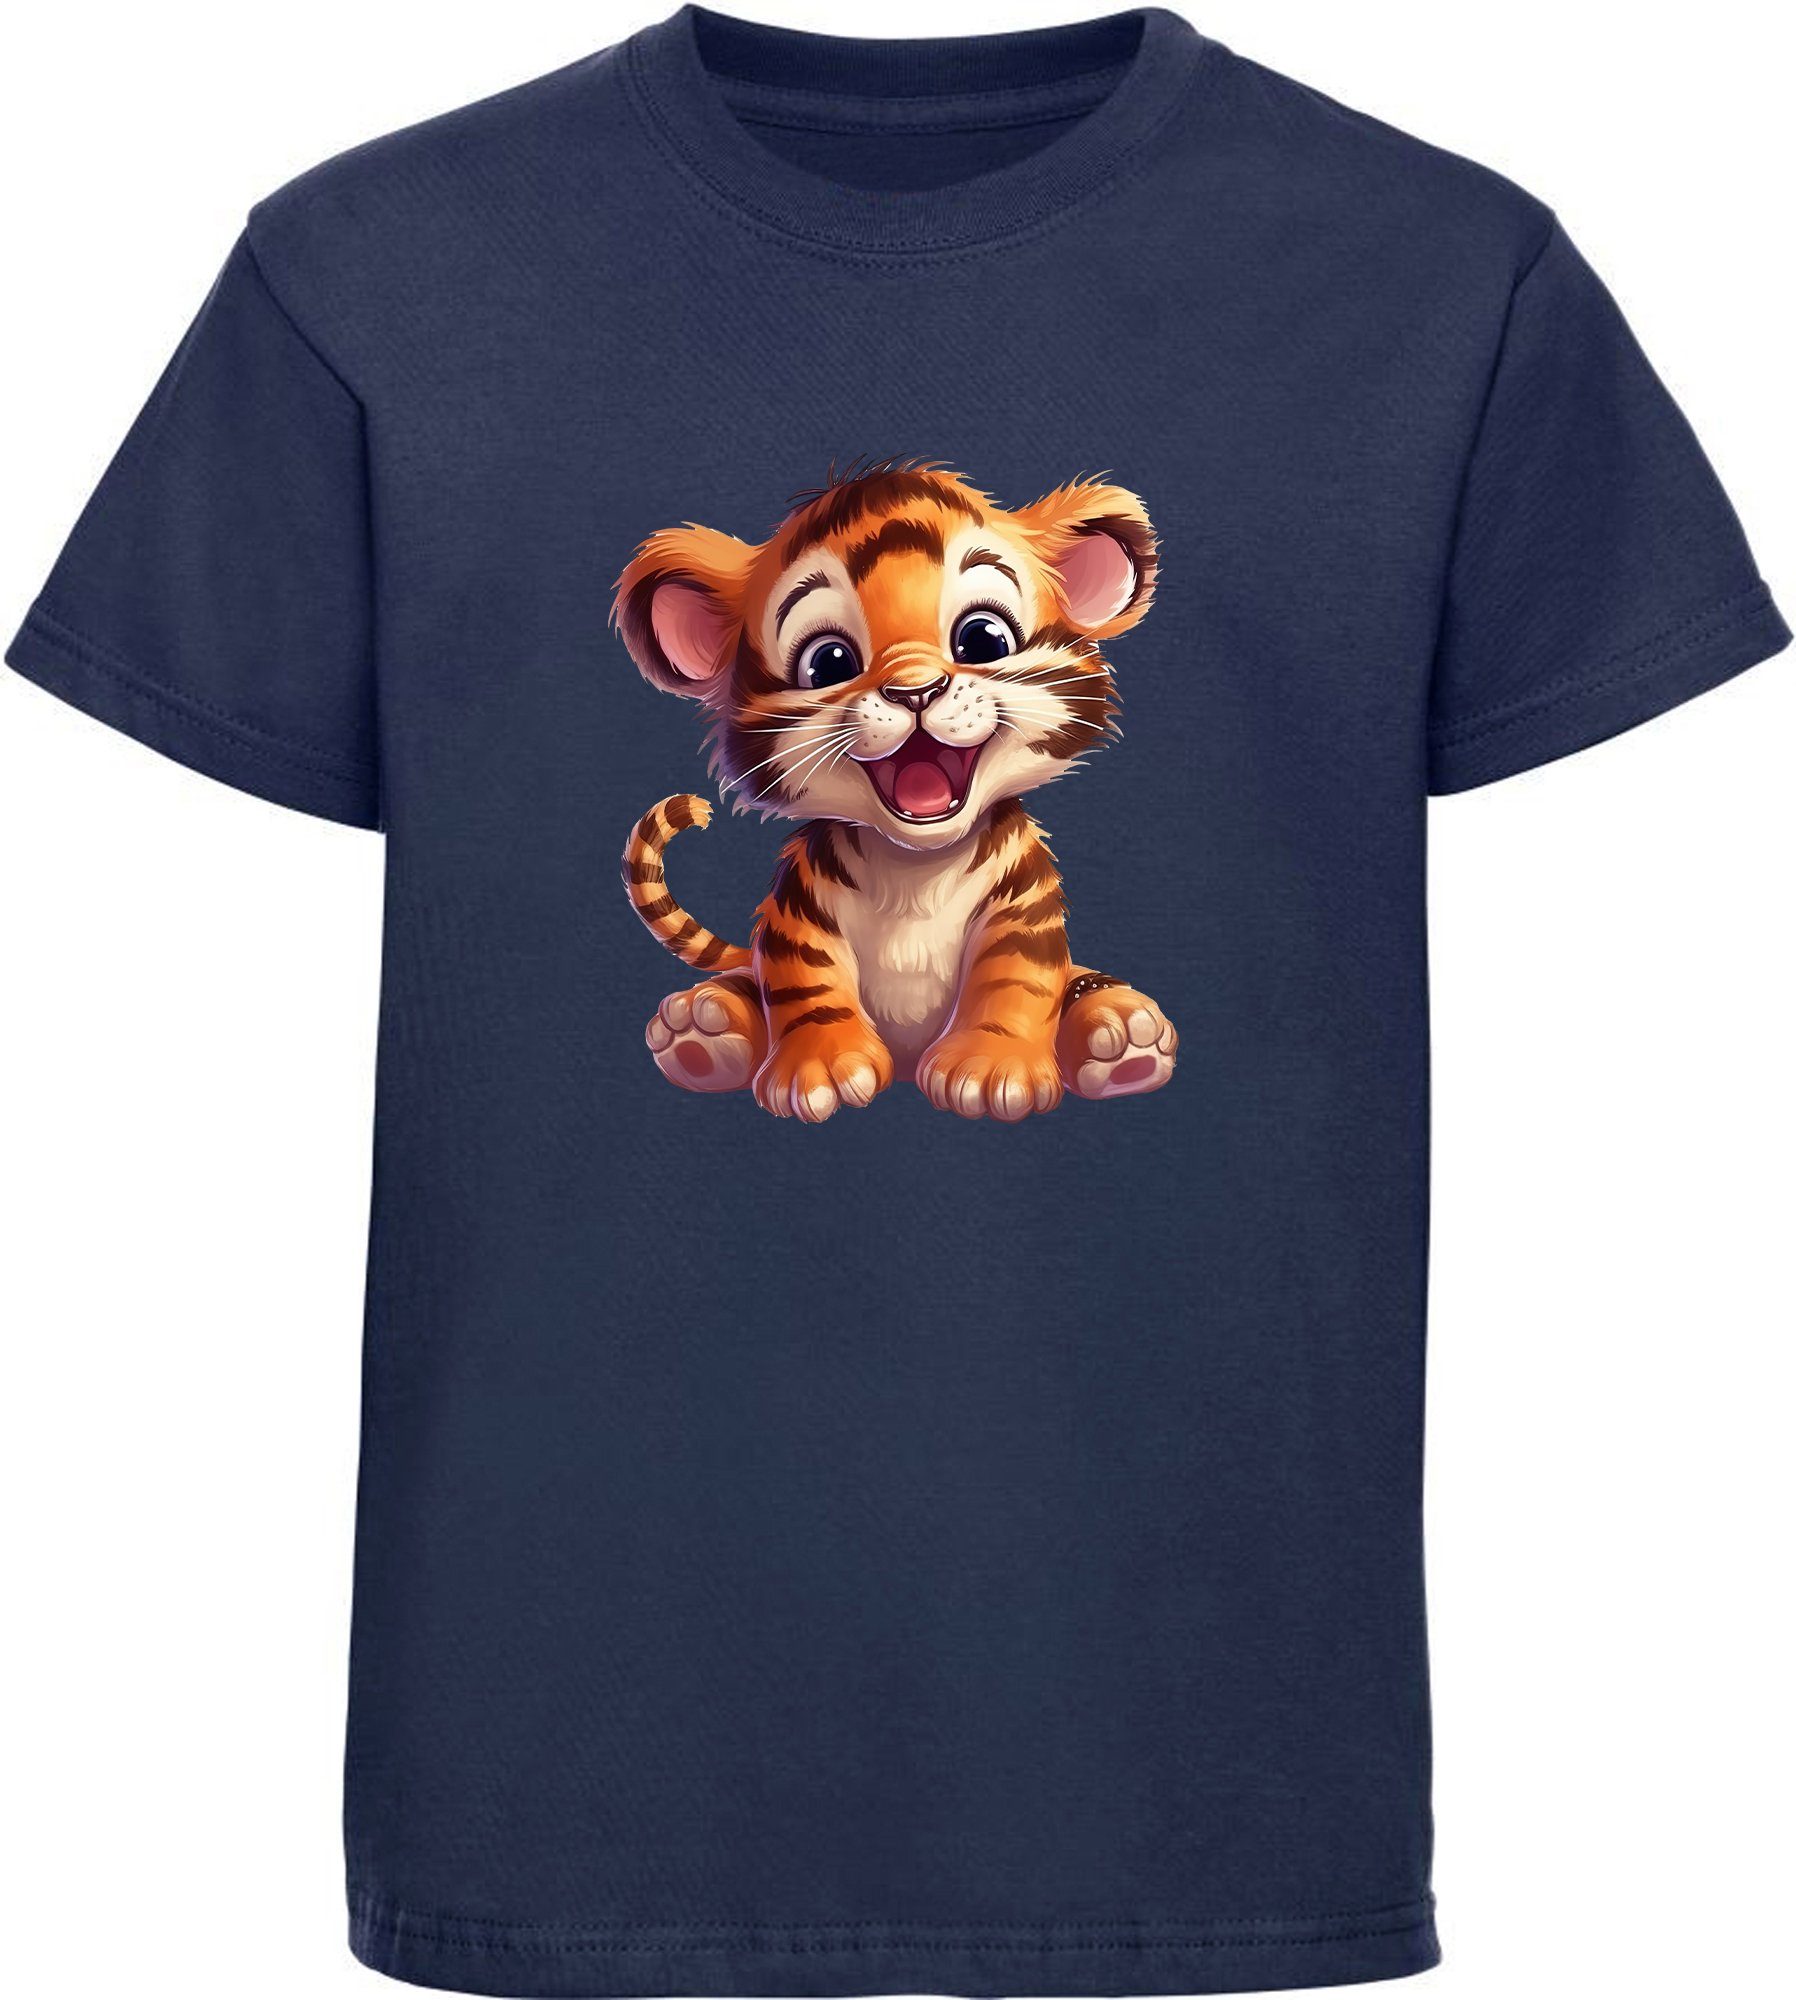 MyDesign24 T-Shirt Kinder Wildtier Print Shirt bedruckt - Baby Tiger Baumwollshirt mit Aufdruck, i266 navy blau